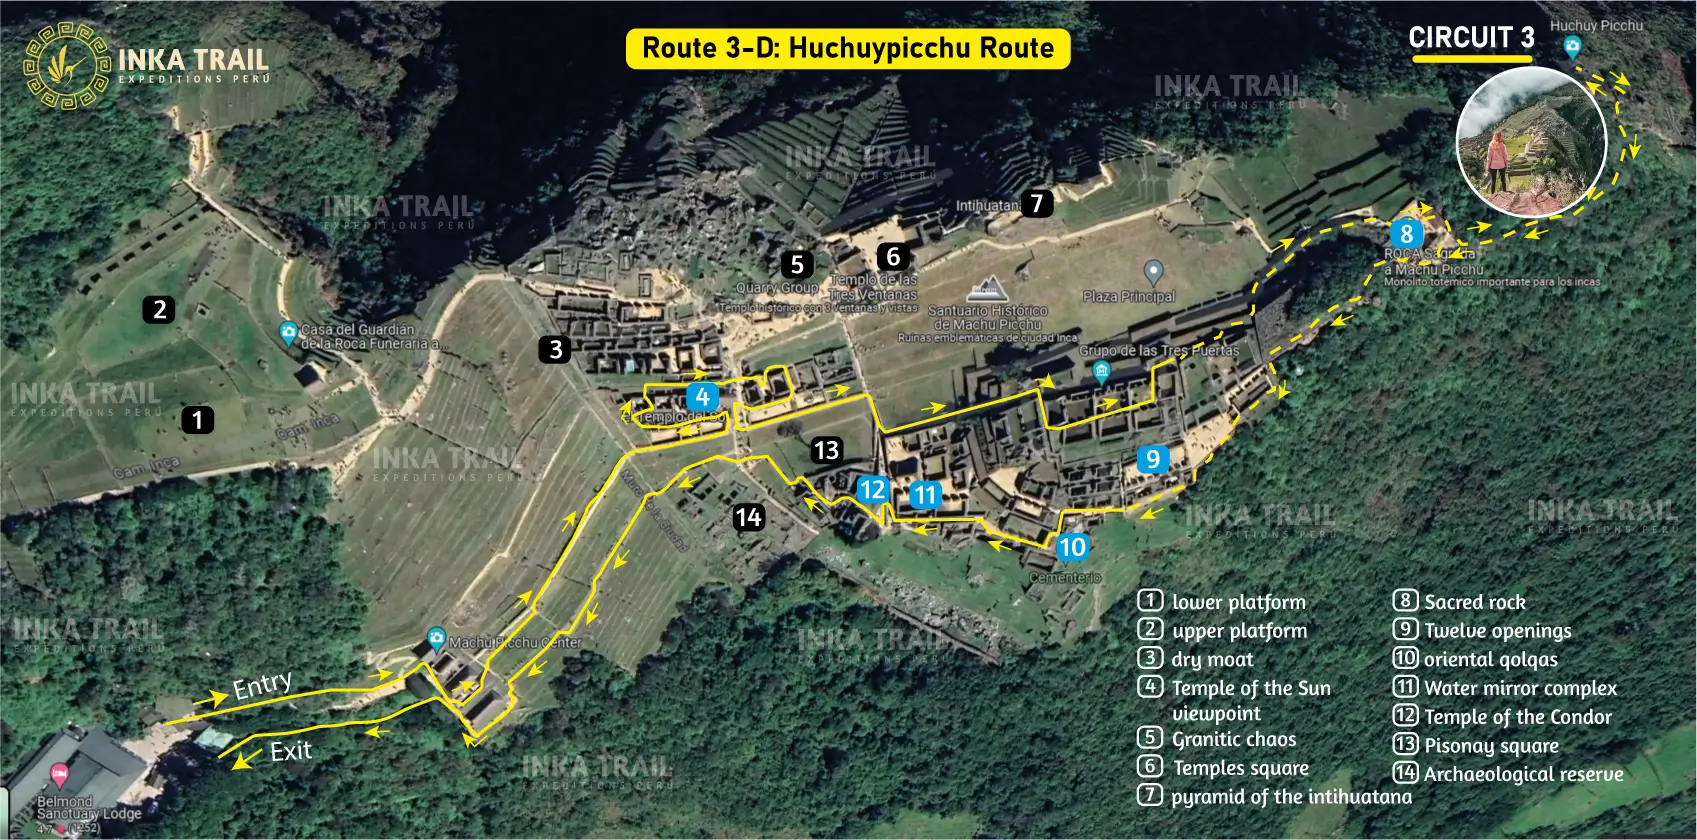 Machu Picchu circuit Route 3-D